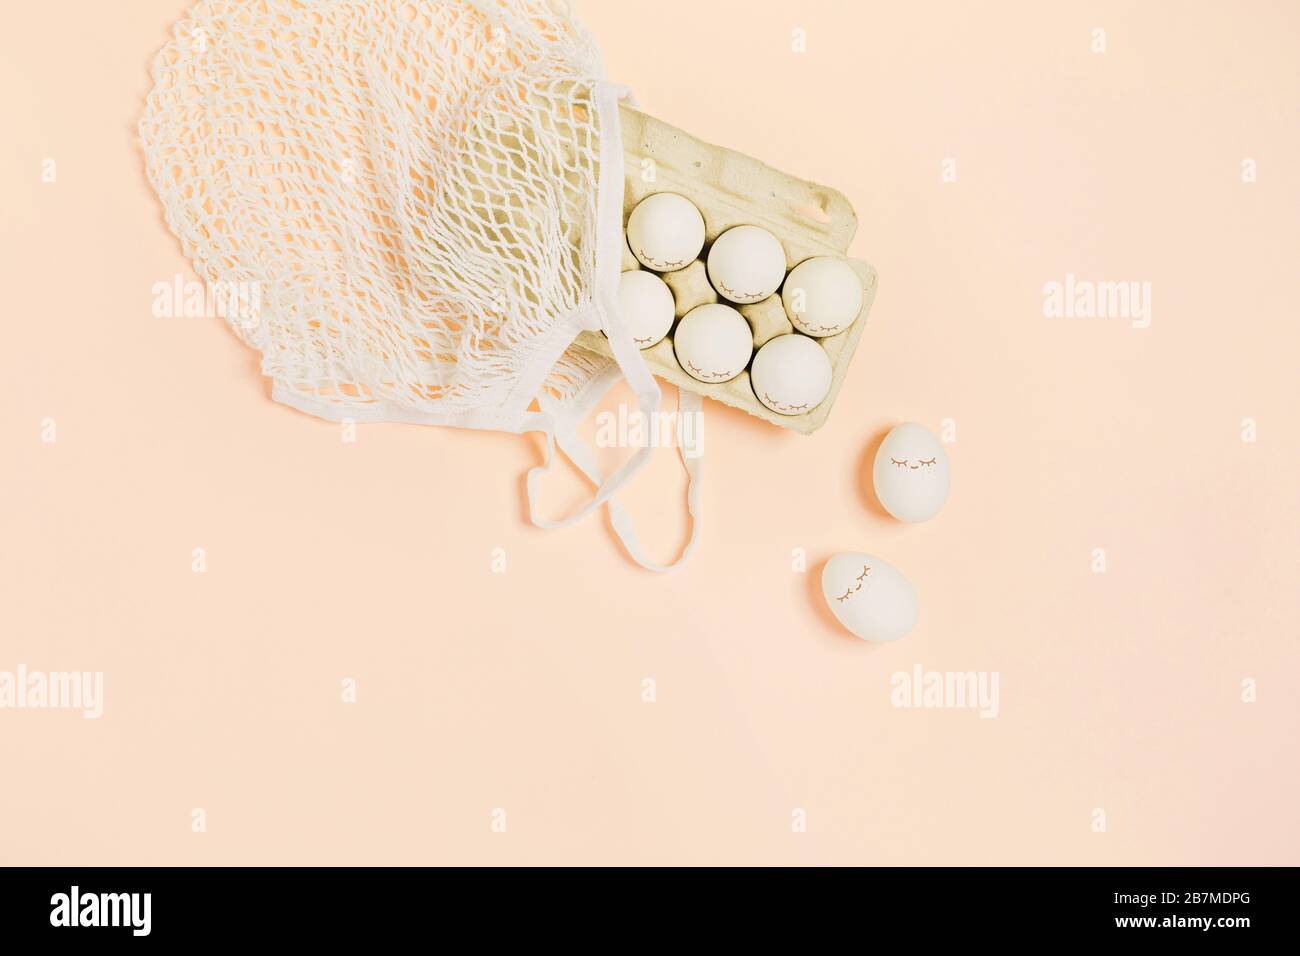 Frohe Ostern. Weiße Eier mit bemalten Augen in Papierverpackungen und weißer Netztasche auf Pfirsichfarbenhintergrund. Flaches Layout, Draufsicht, Kopierbereich. Stockfoto